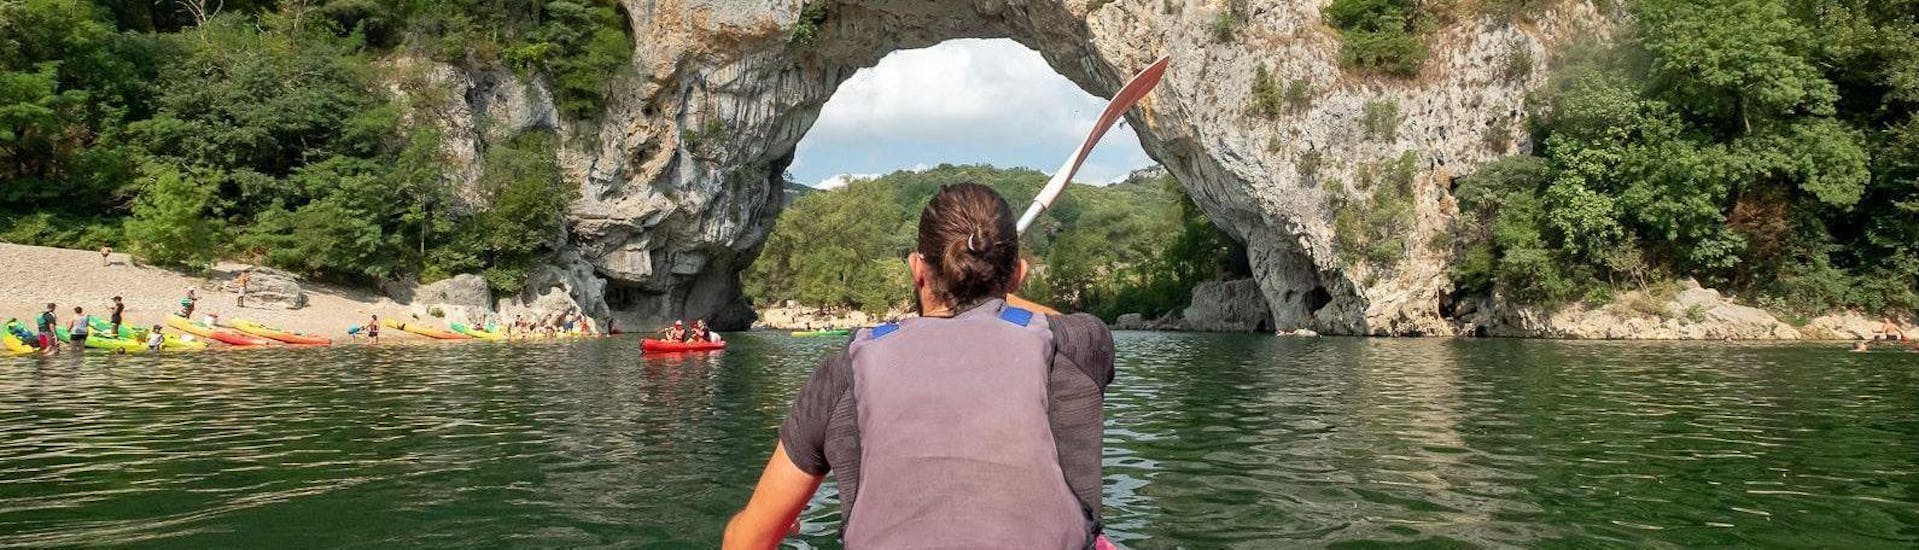 Durante il tour "Maxi-Discovery 13km" in Ardèche, una coppia passa sotto il famoso arco del Pont d'Arc mentre è seduta in una canoa di alta qualità affittata ad Aigue Vive.